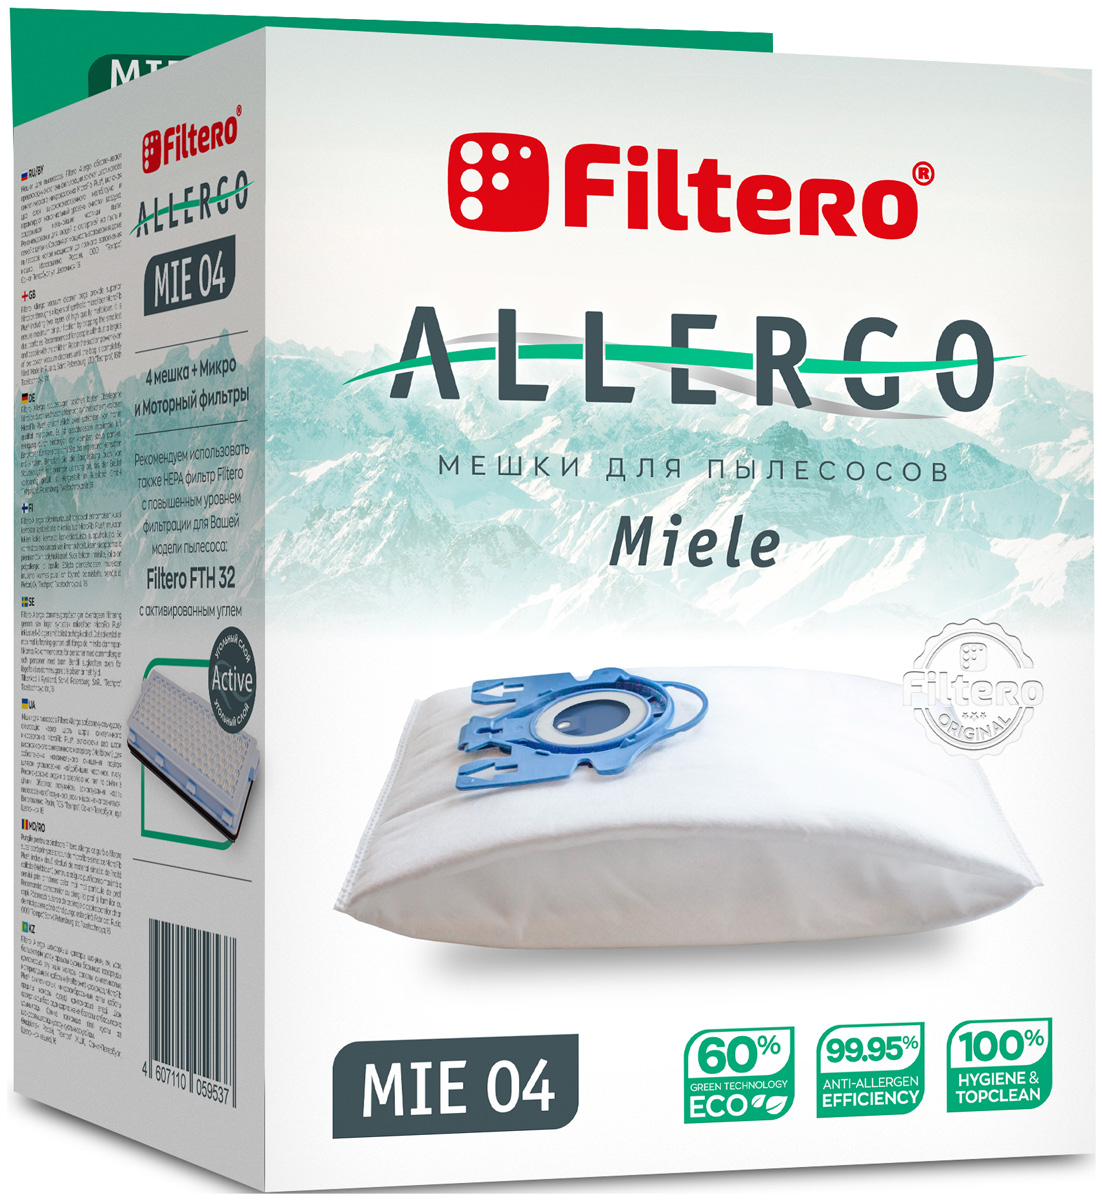 Пылесборники Filtero MIE 04 Allergo 4шт. + моторный фильтр и микрофильтр пылесборники filtero mie 04 4 allergo для miele